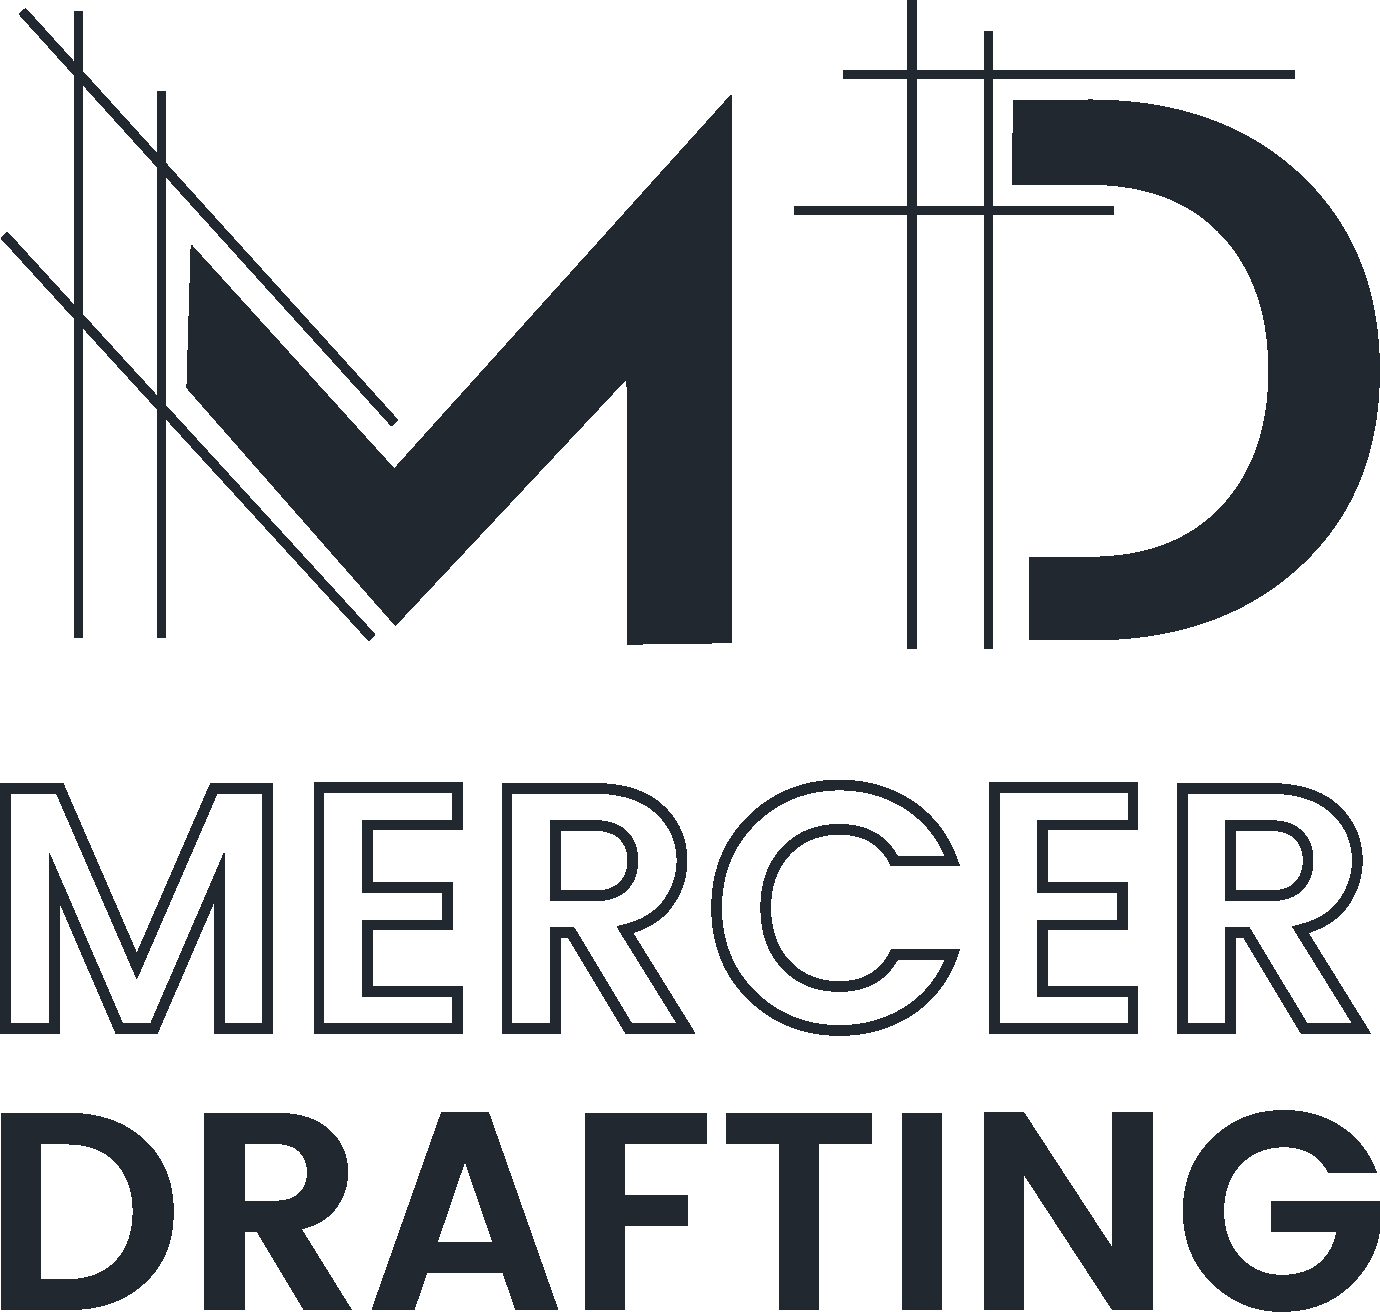 Mercer Drafting